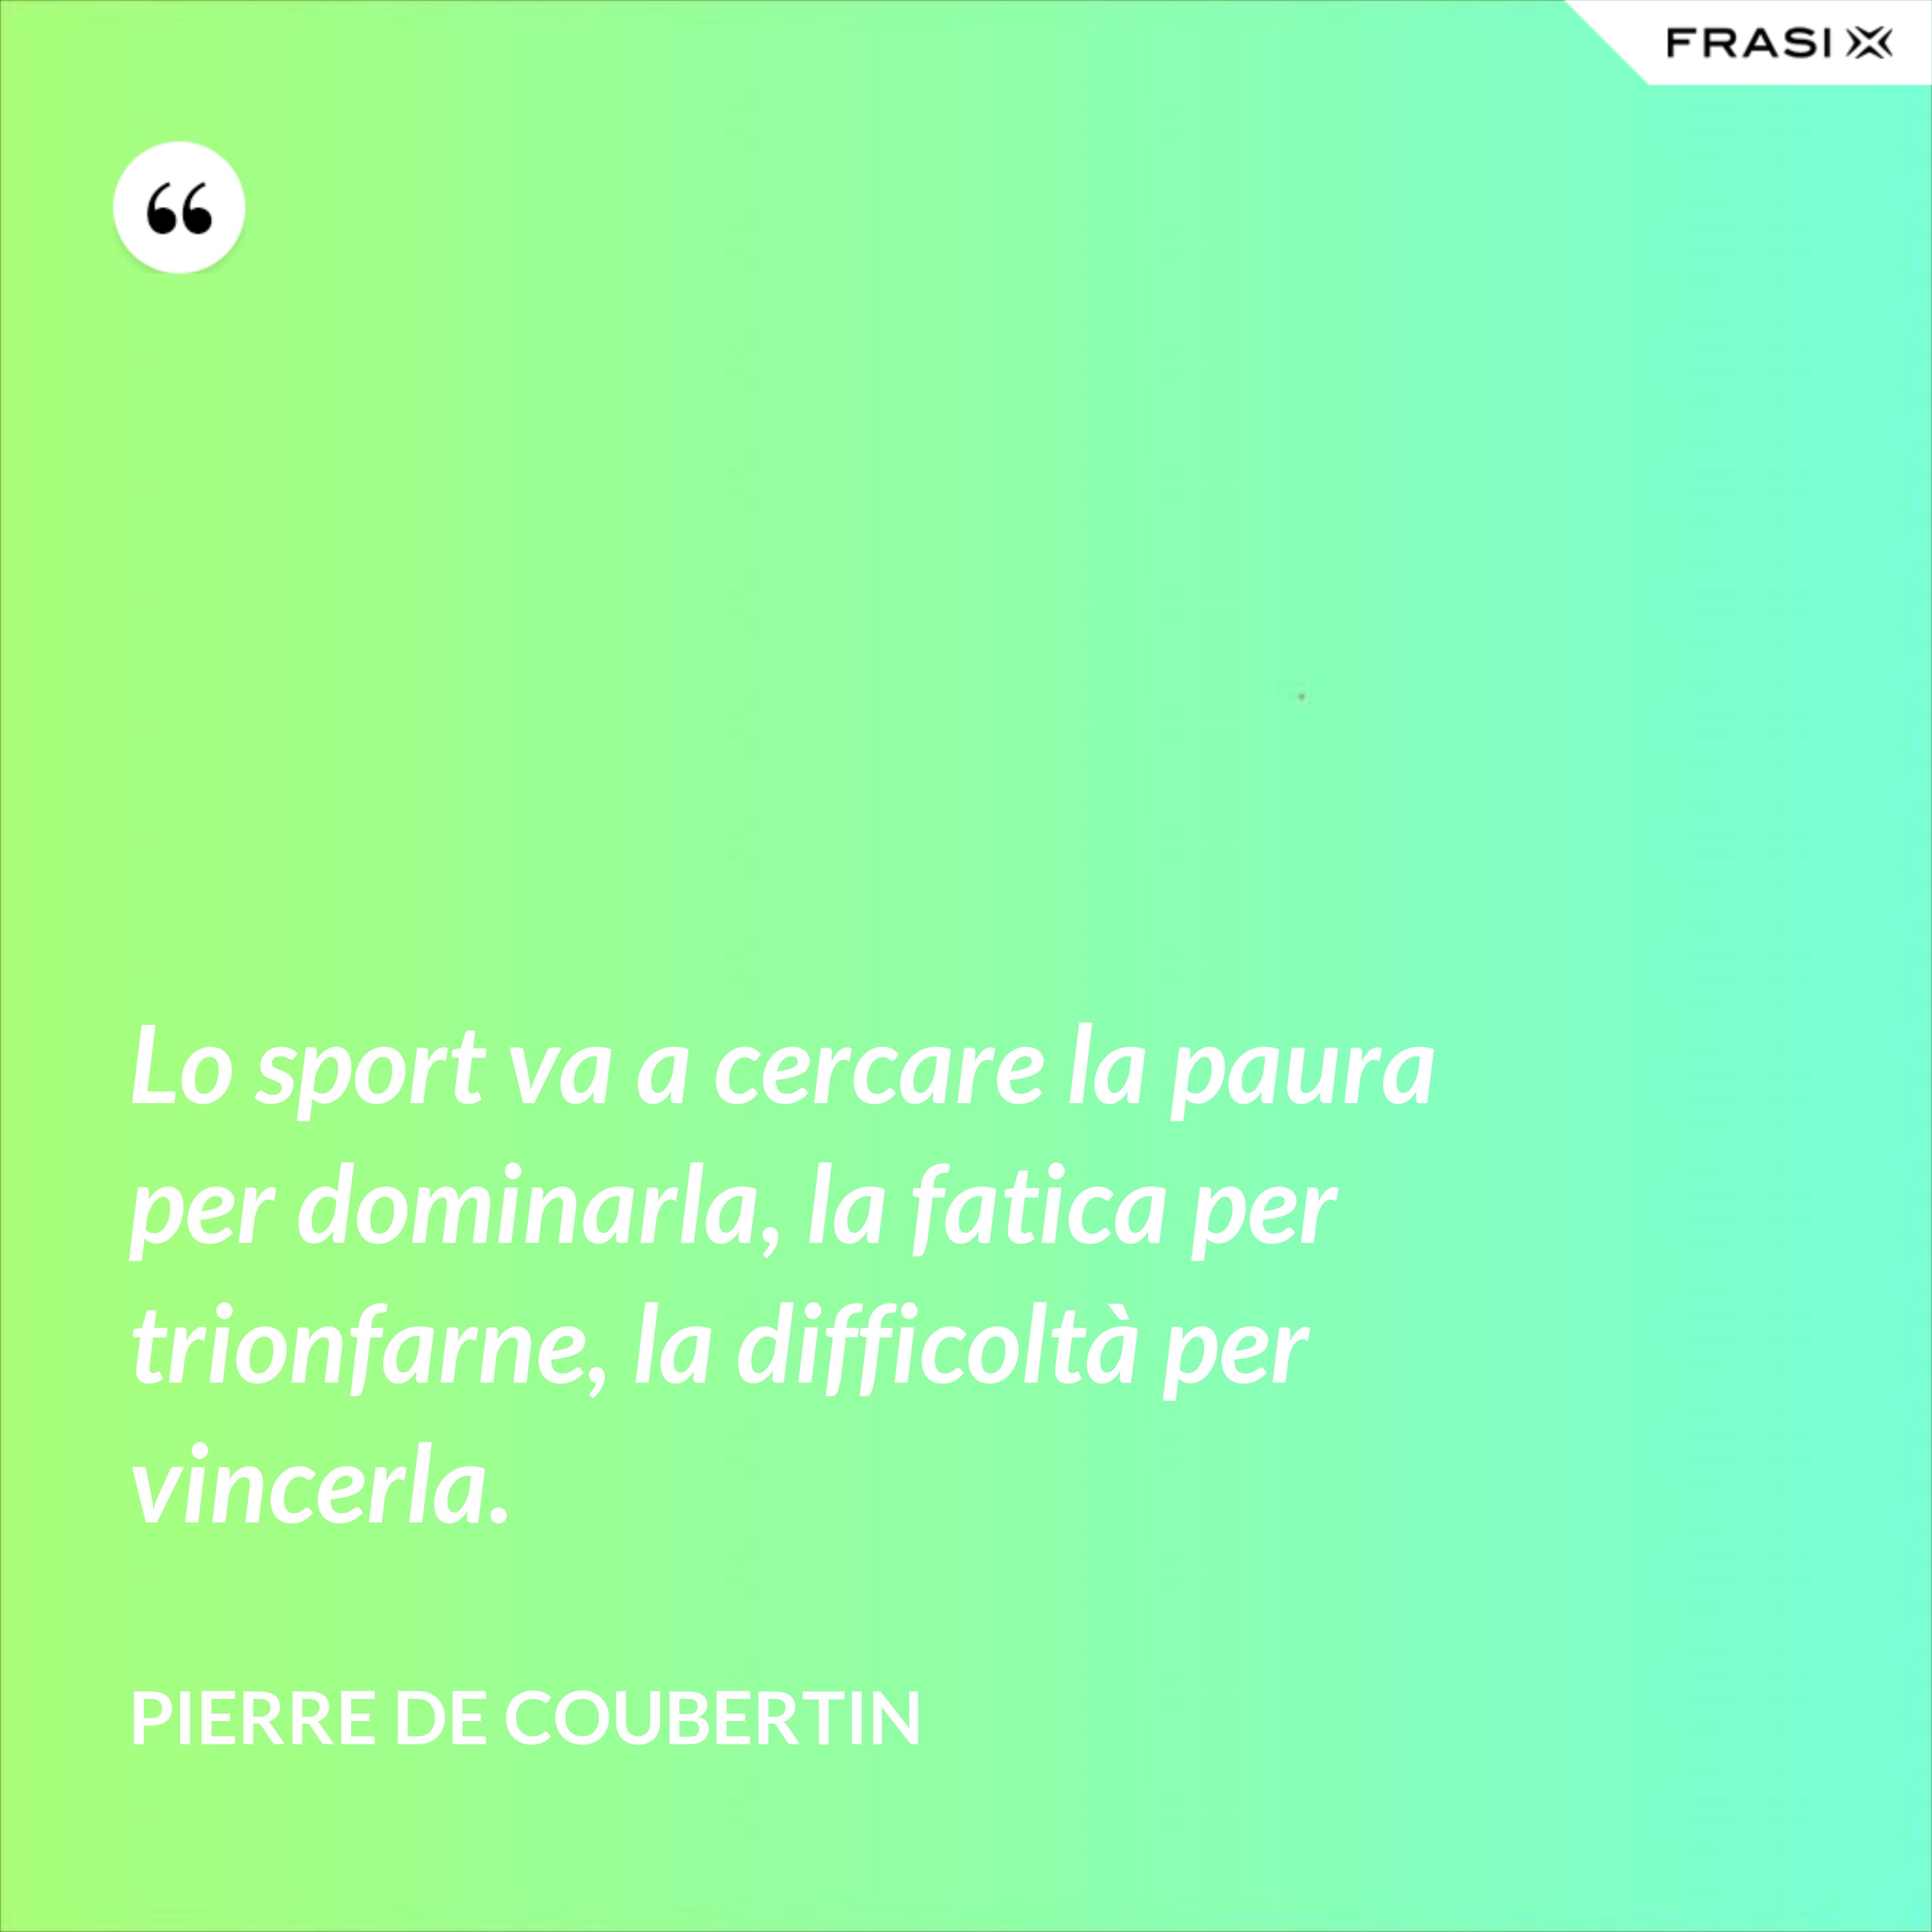 Lo sport va a cercare la paura per dominarla, la fatica per trionfarne, la difficoltà per vincerla. - Pierre de Coubertin